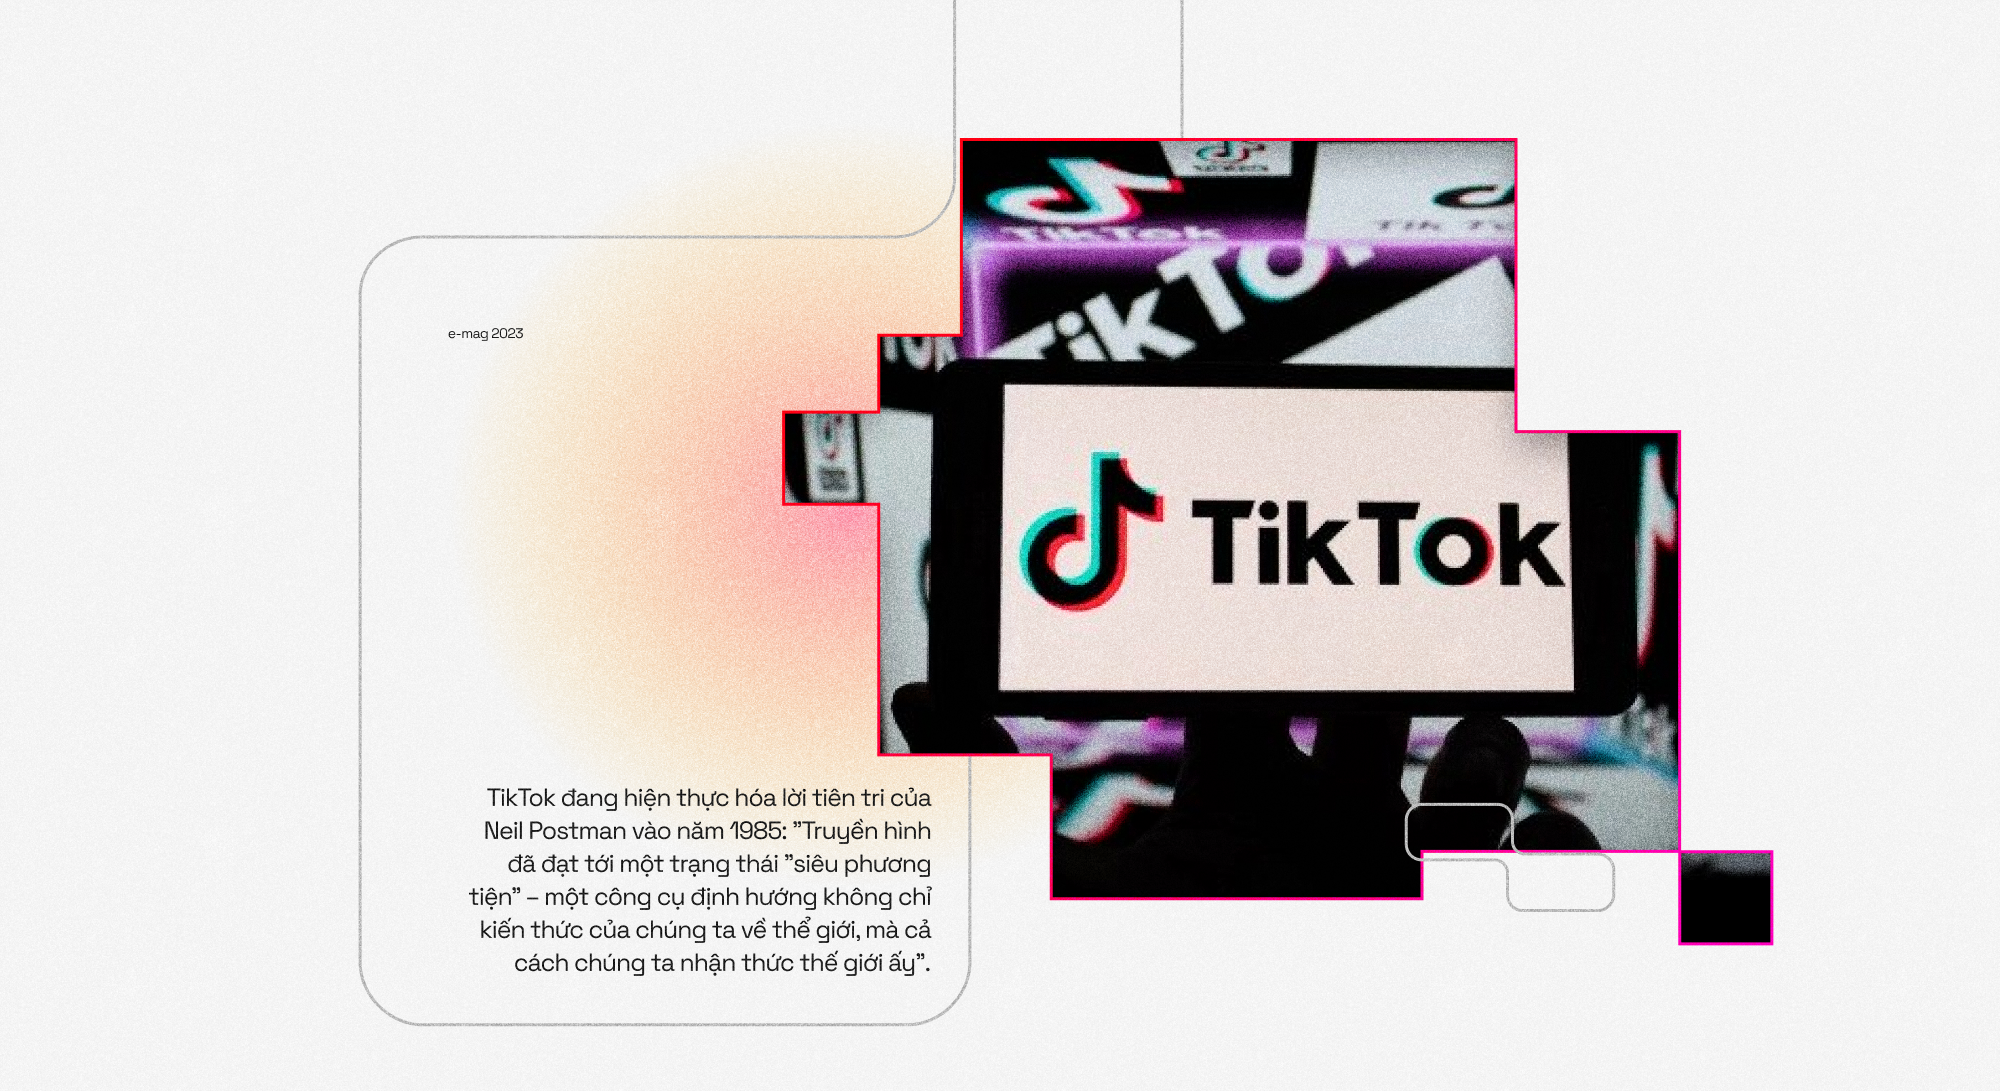 Từ YouTube sang TikTok: Sự sụp đổ của những giá trị mạng xã hội kiểu mẫu - Ảnh 27.